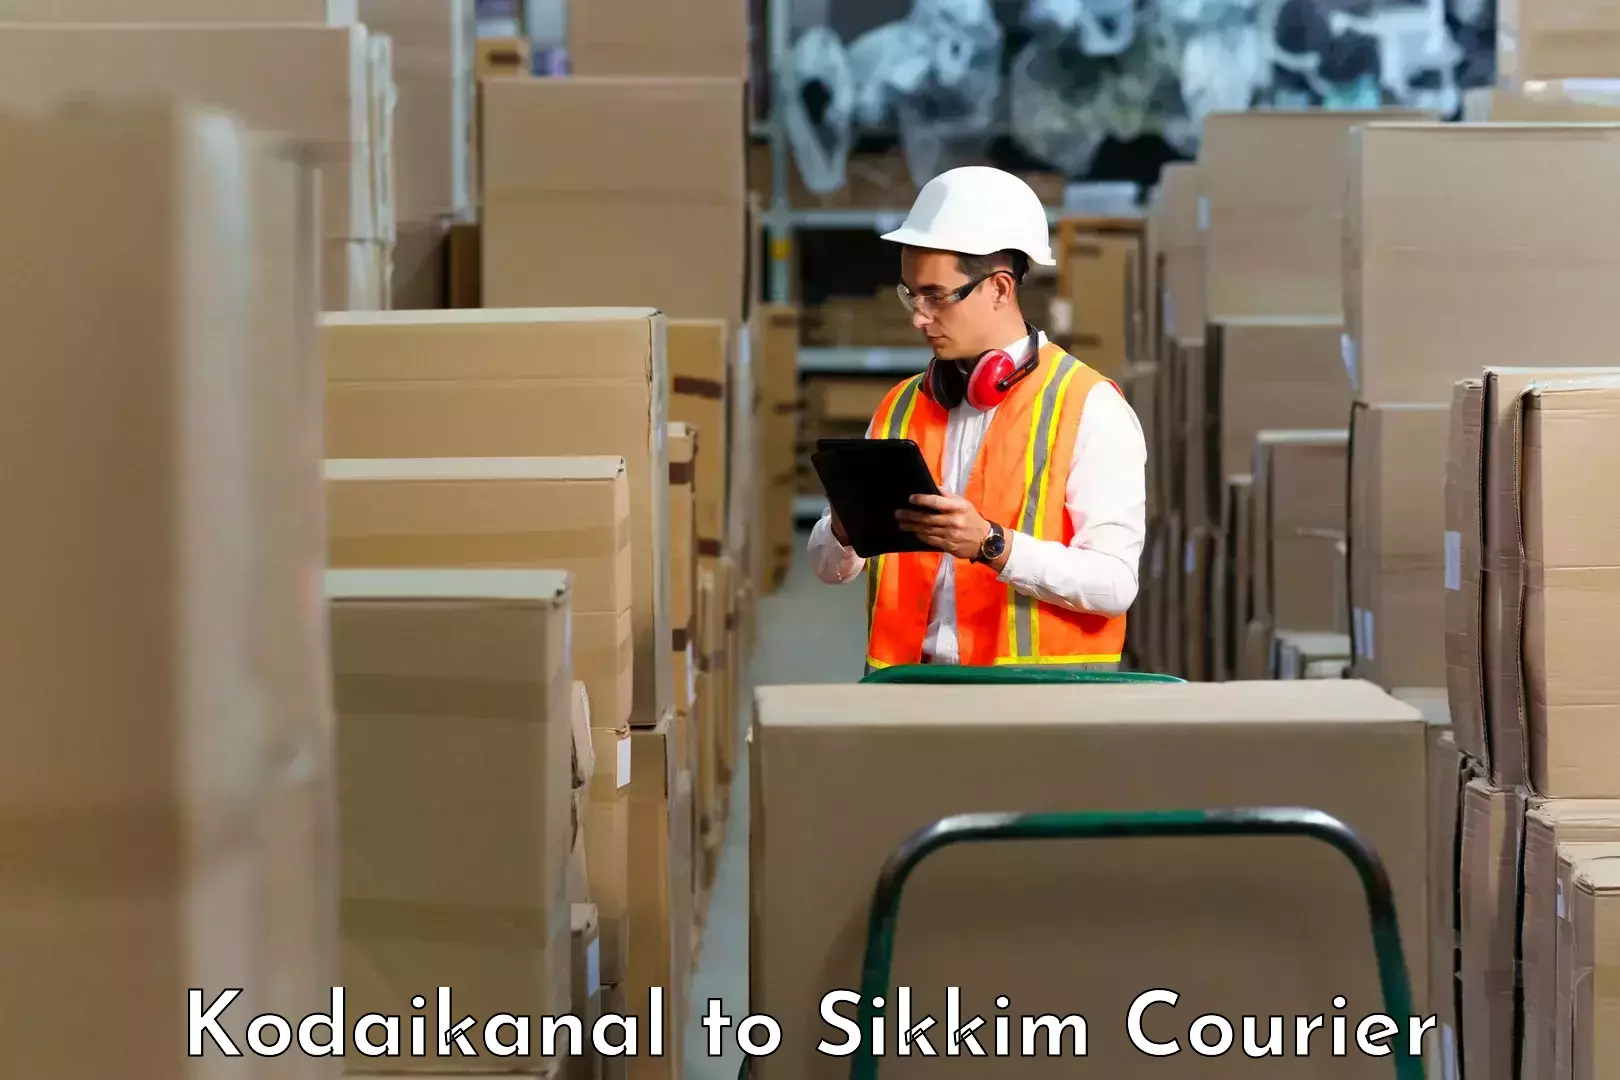 High-speed logistics services Kodaikanal to East Sikkim